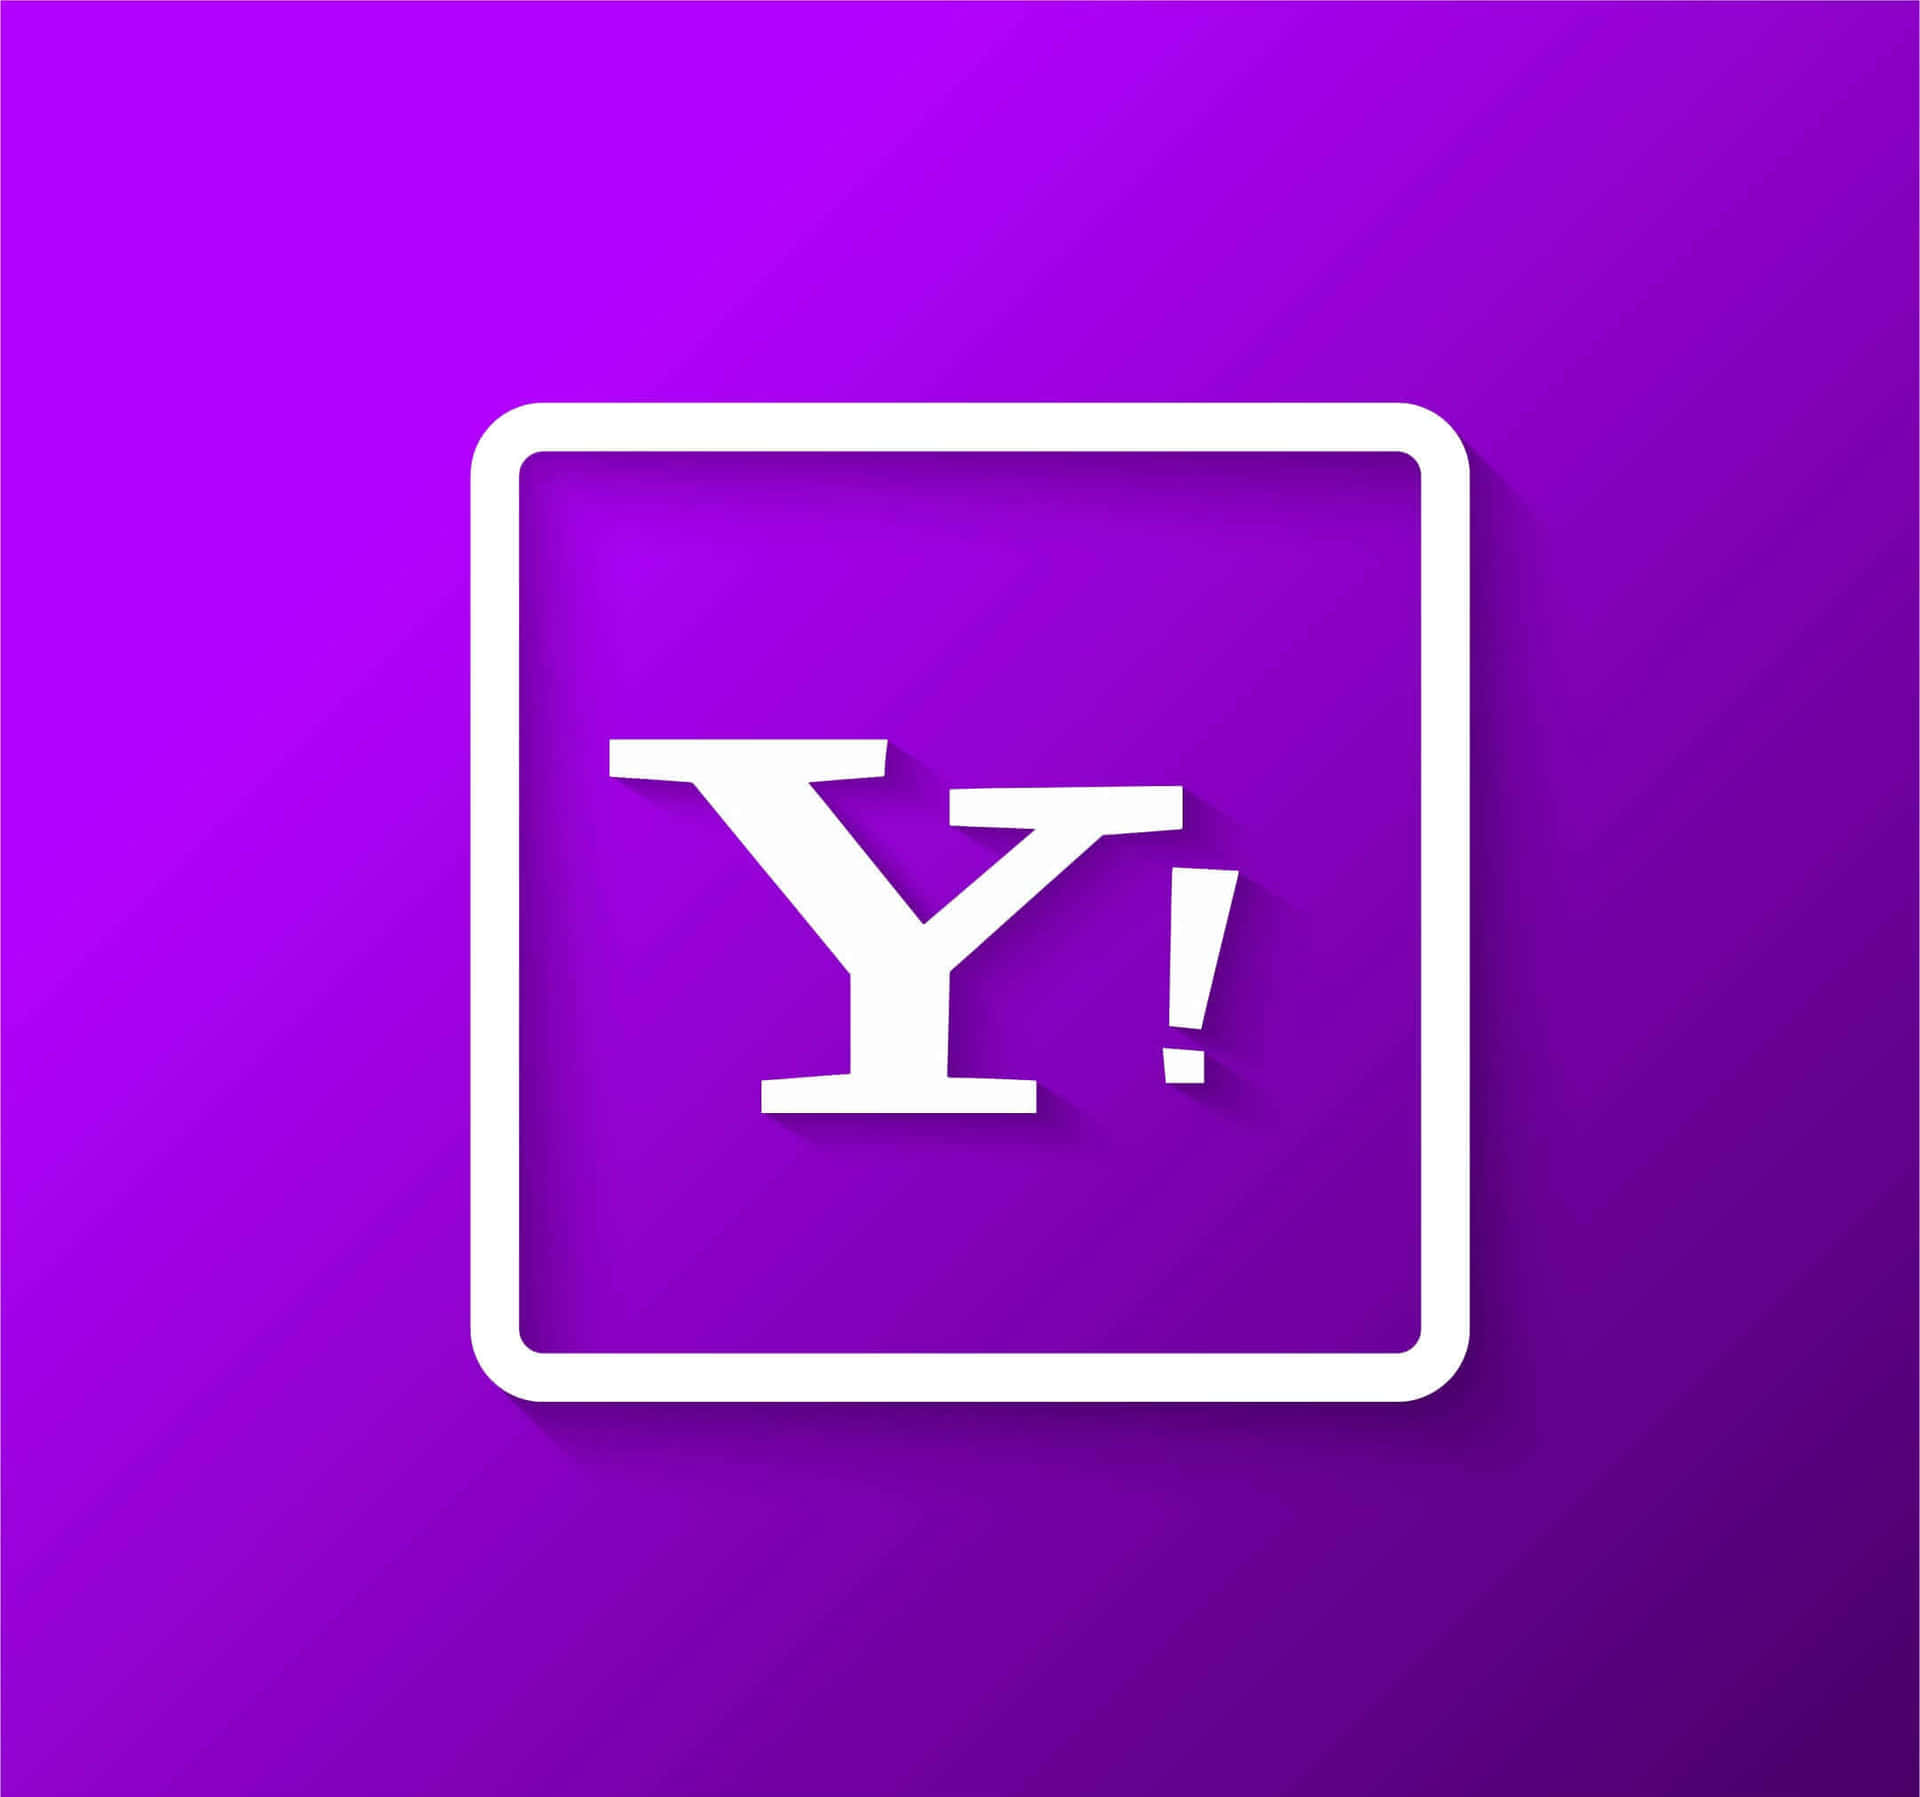 Fåaktuella Nyheter, Sport Och Ekonomisk Information Med Yahoo.